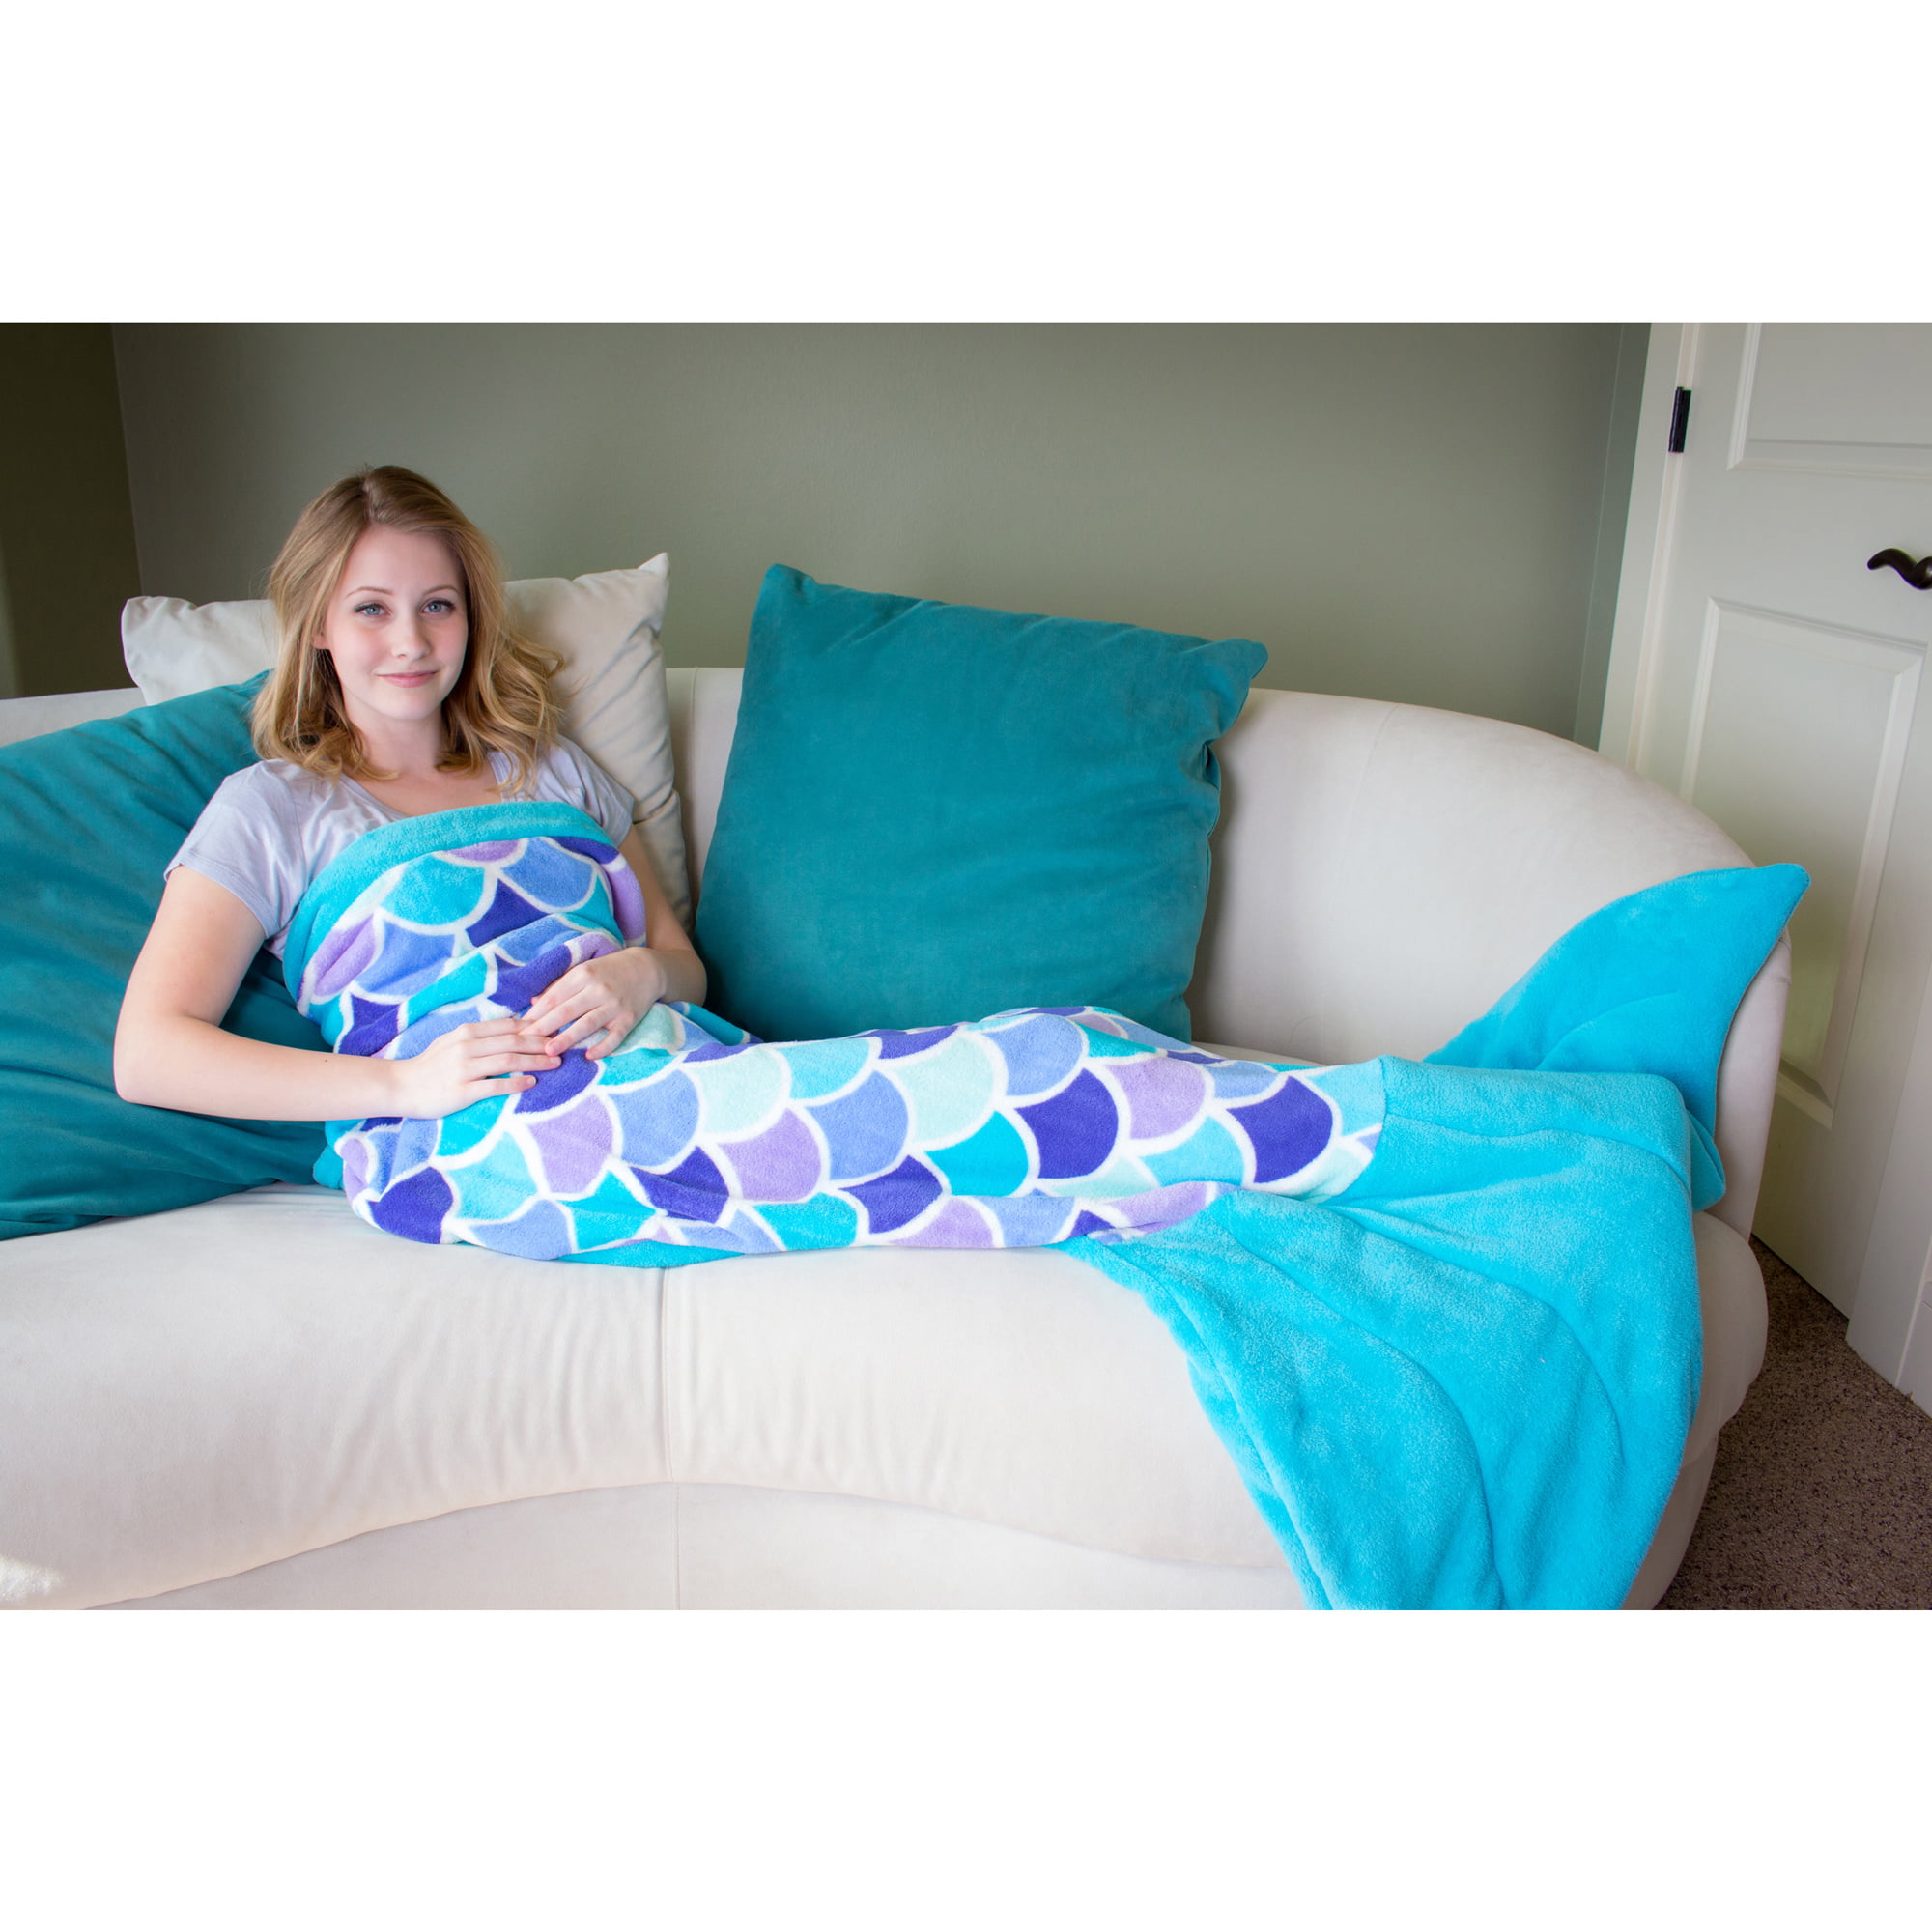 71x 32 A- Dark Blue YEAHBEER Mermaid Tail Blanket for Adult,Cozy Super Soft All Seasons Sleeping Blankets,Mermaid Blanket Best Gifts for Girls-Women 